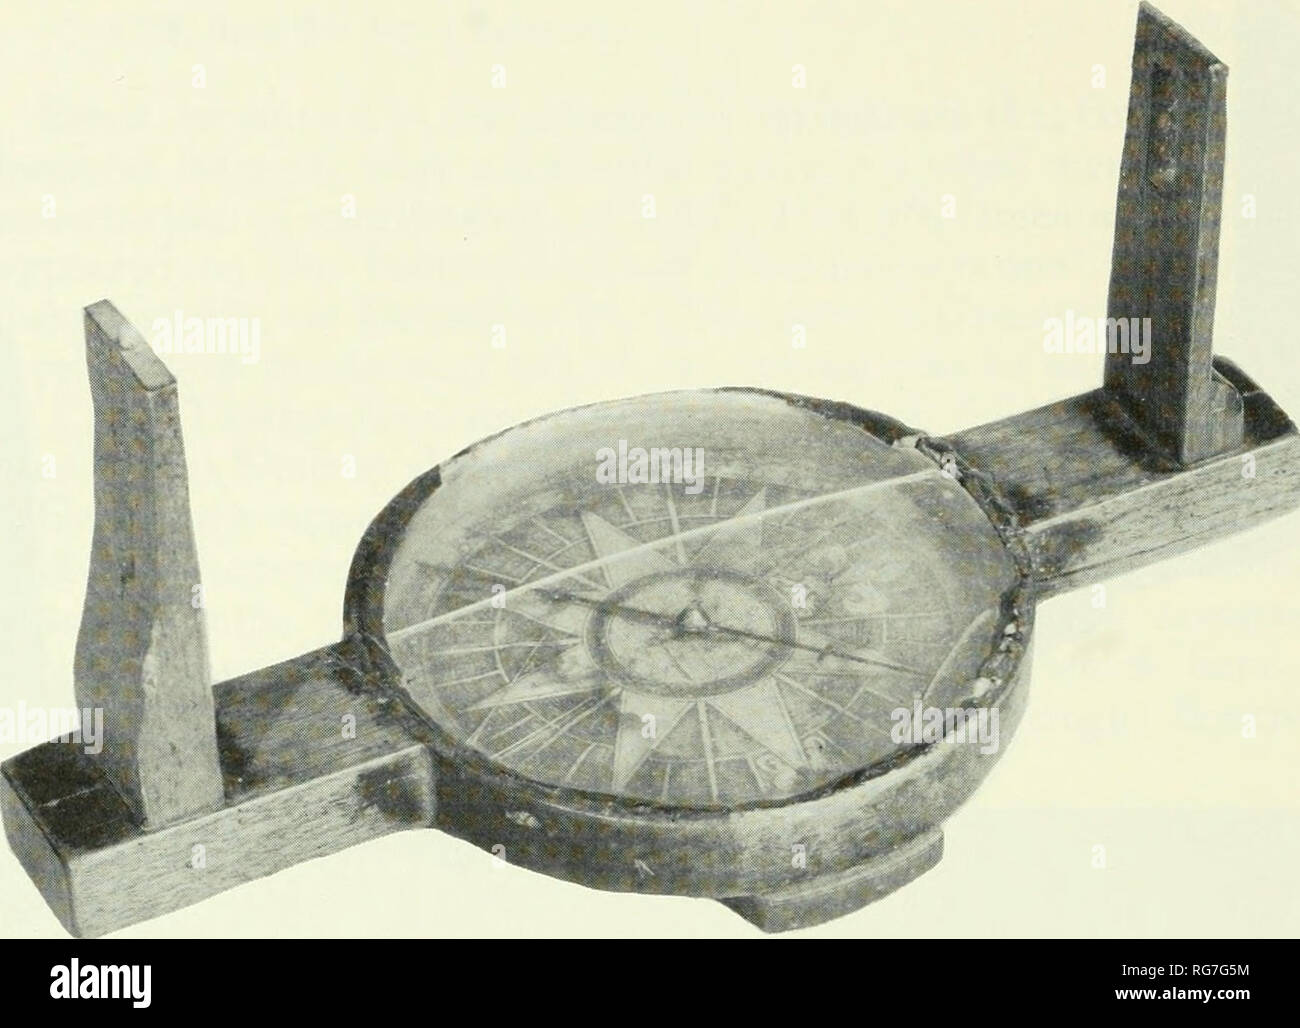 Boletín - Museo Nacional de los Estados Unidos. La ciencia. Figura 44.- brújula topografía de madera fabricado vendido por Greenough. Hecha de Hickory, es de 11 pulg. de largo y